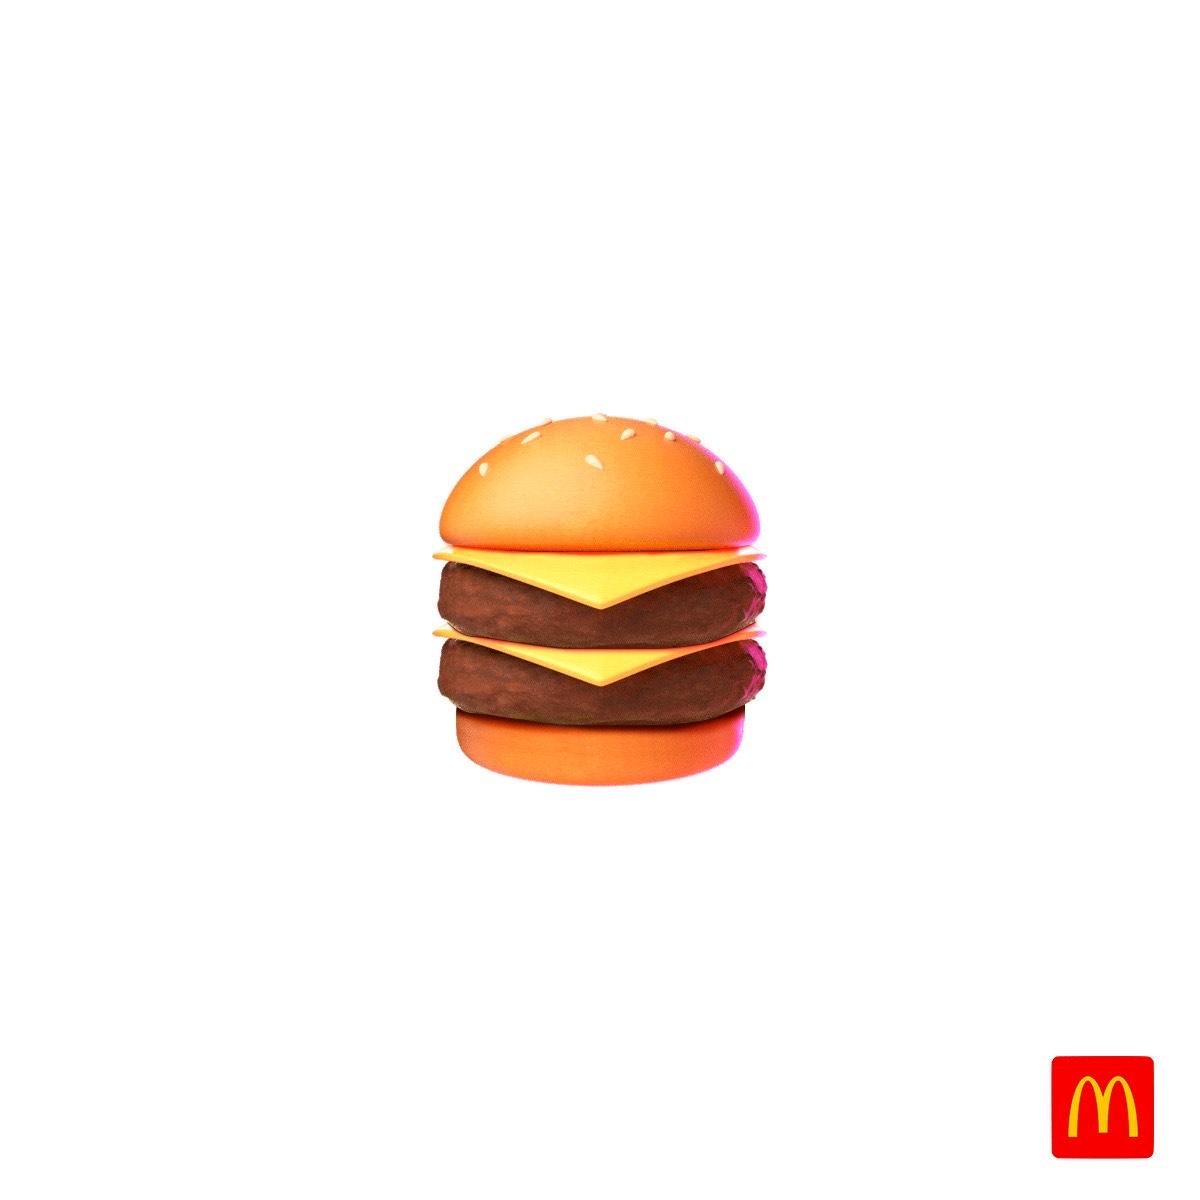 推出3 款新 emoji 之外,麦当劳居然用它们画汉堡!